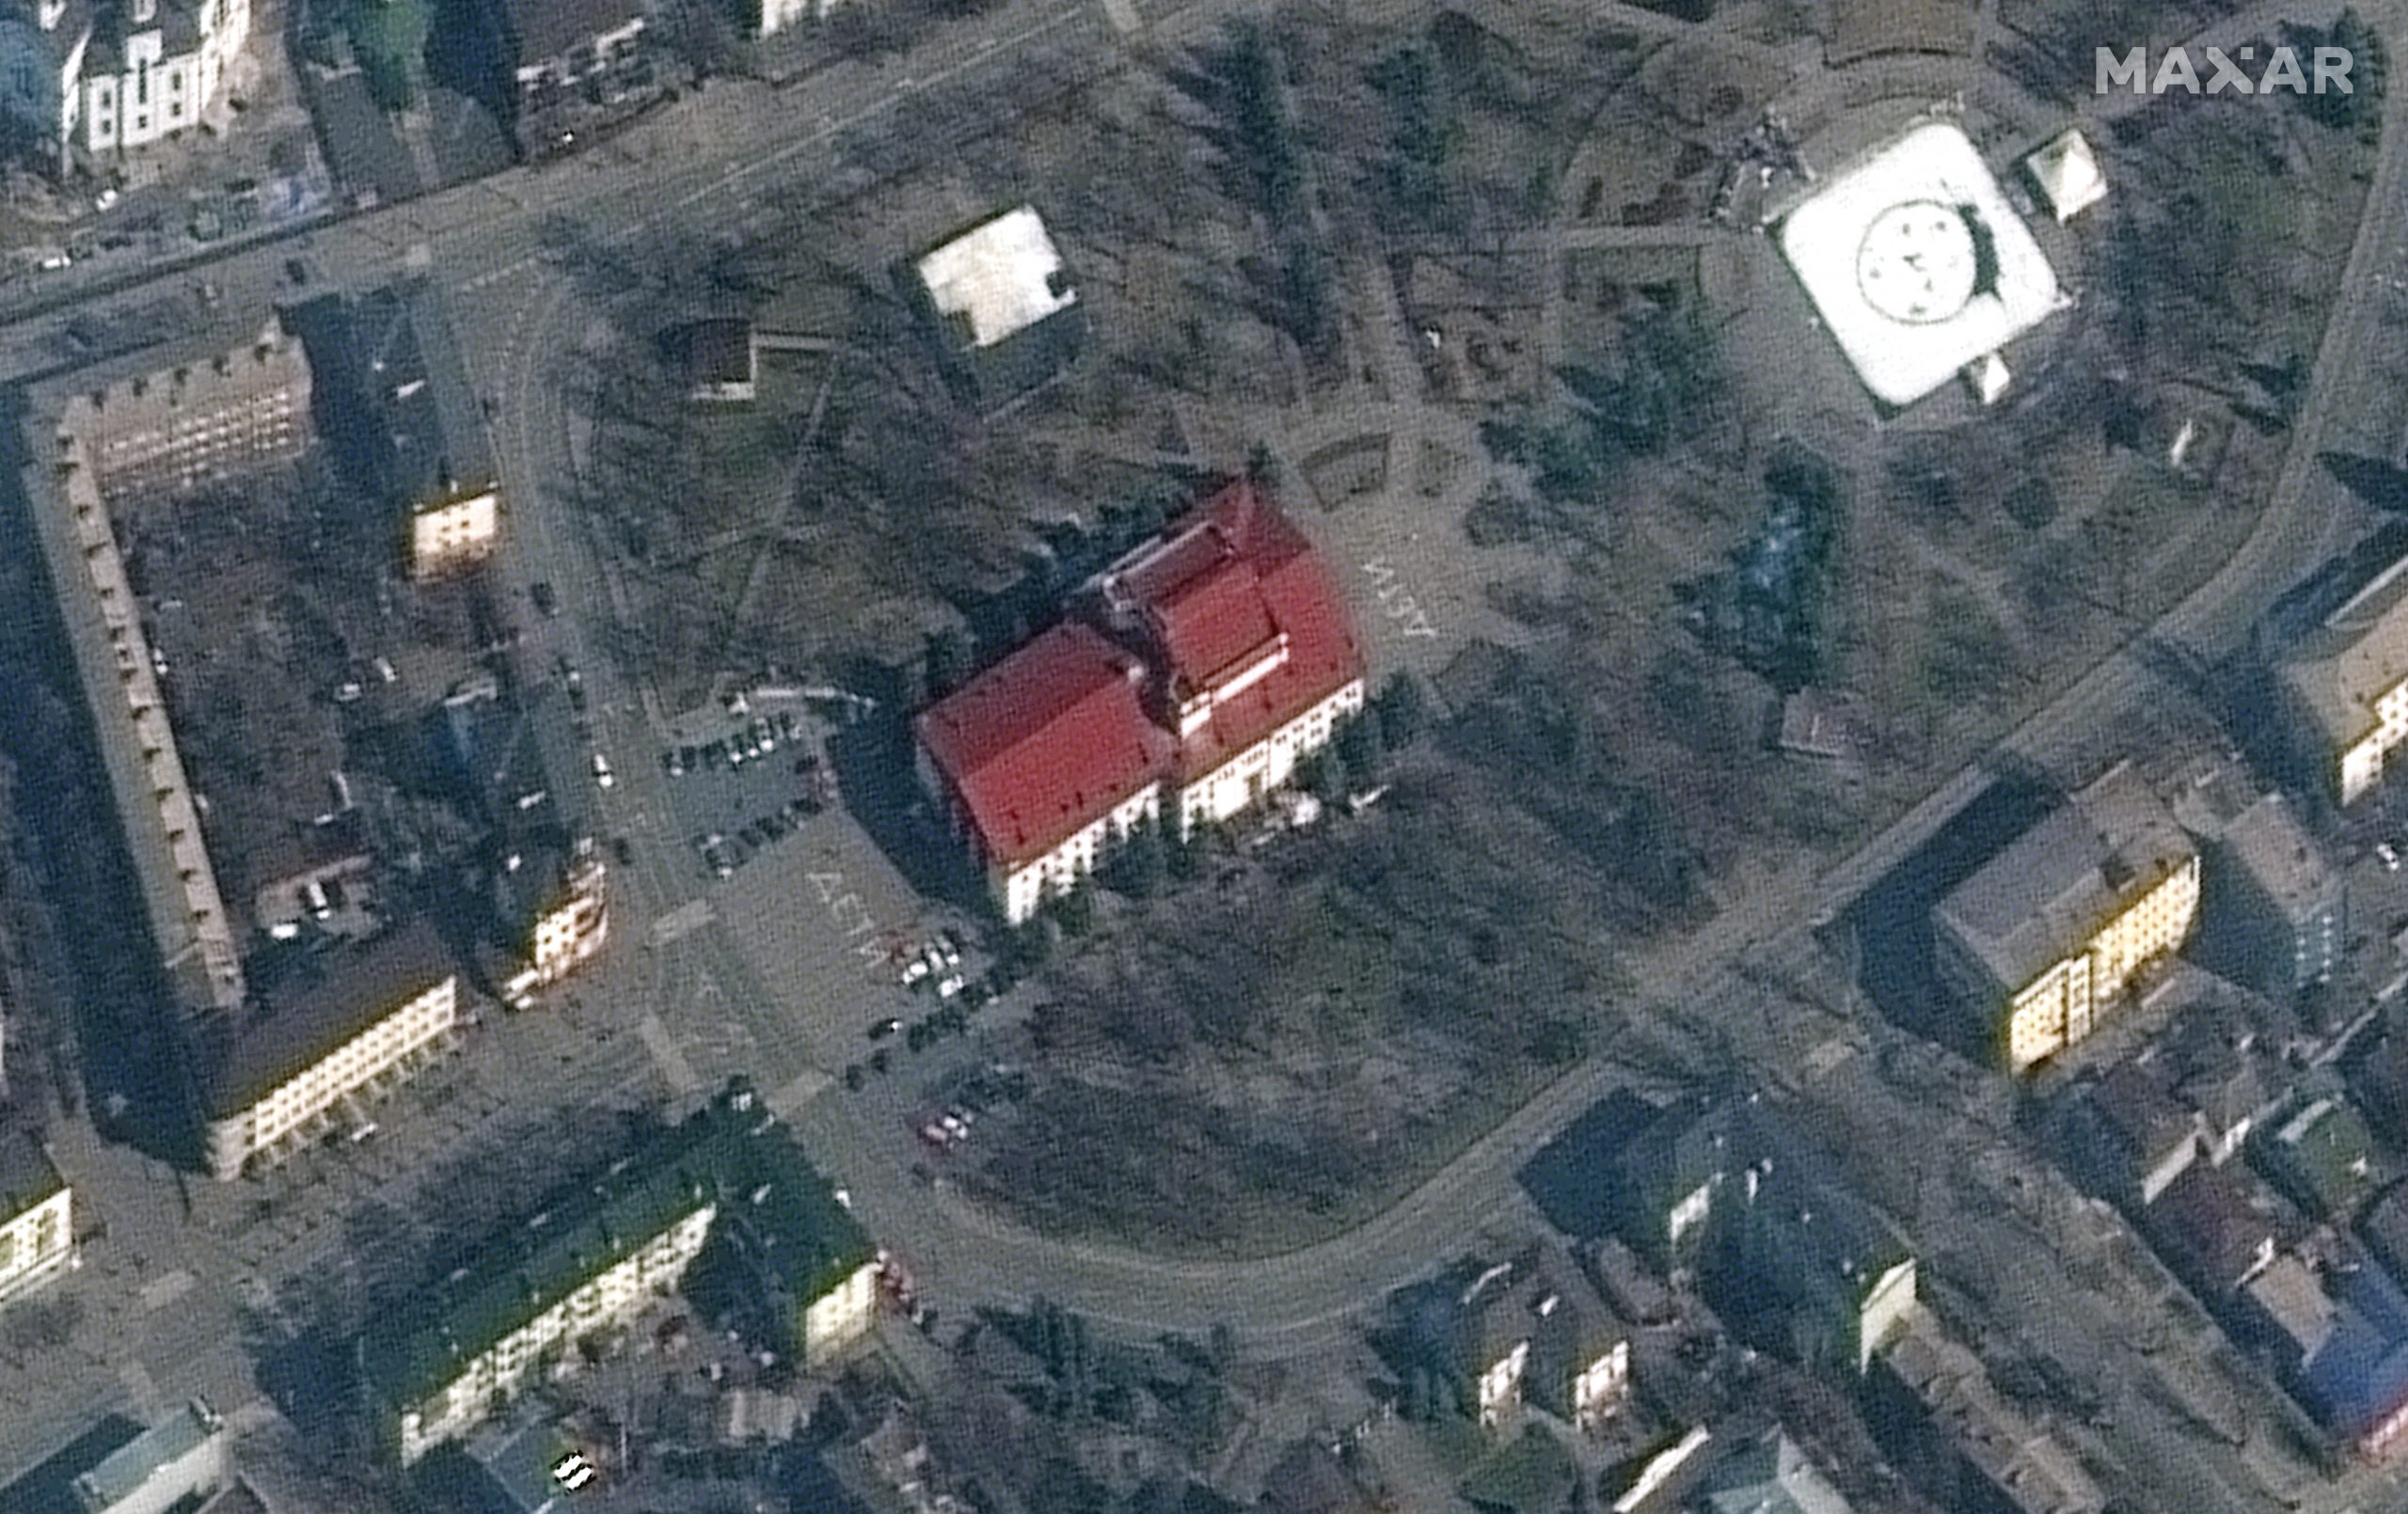 马里乌波尔剧院毁于俄军空袭 内有千人避难当局估伤亡惨重